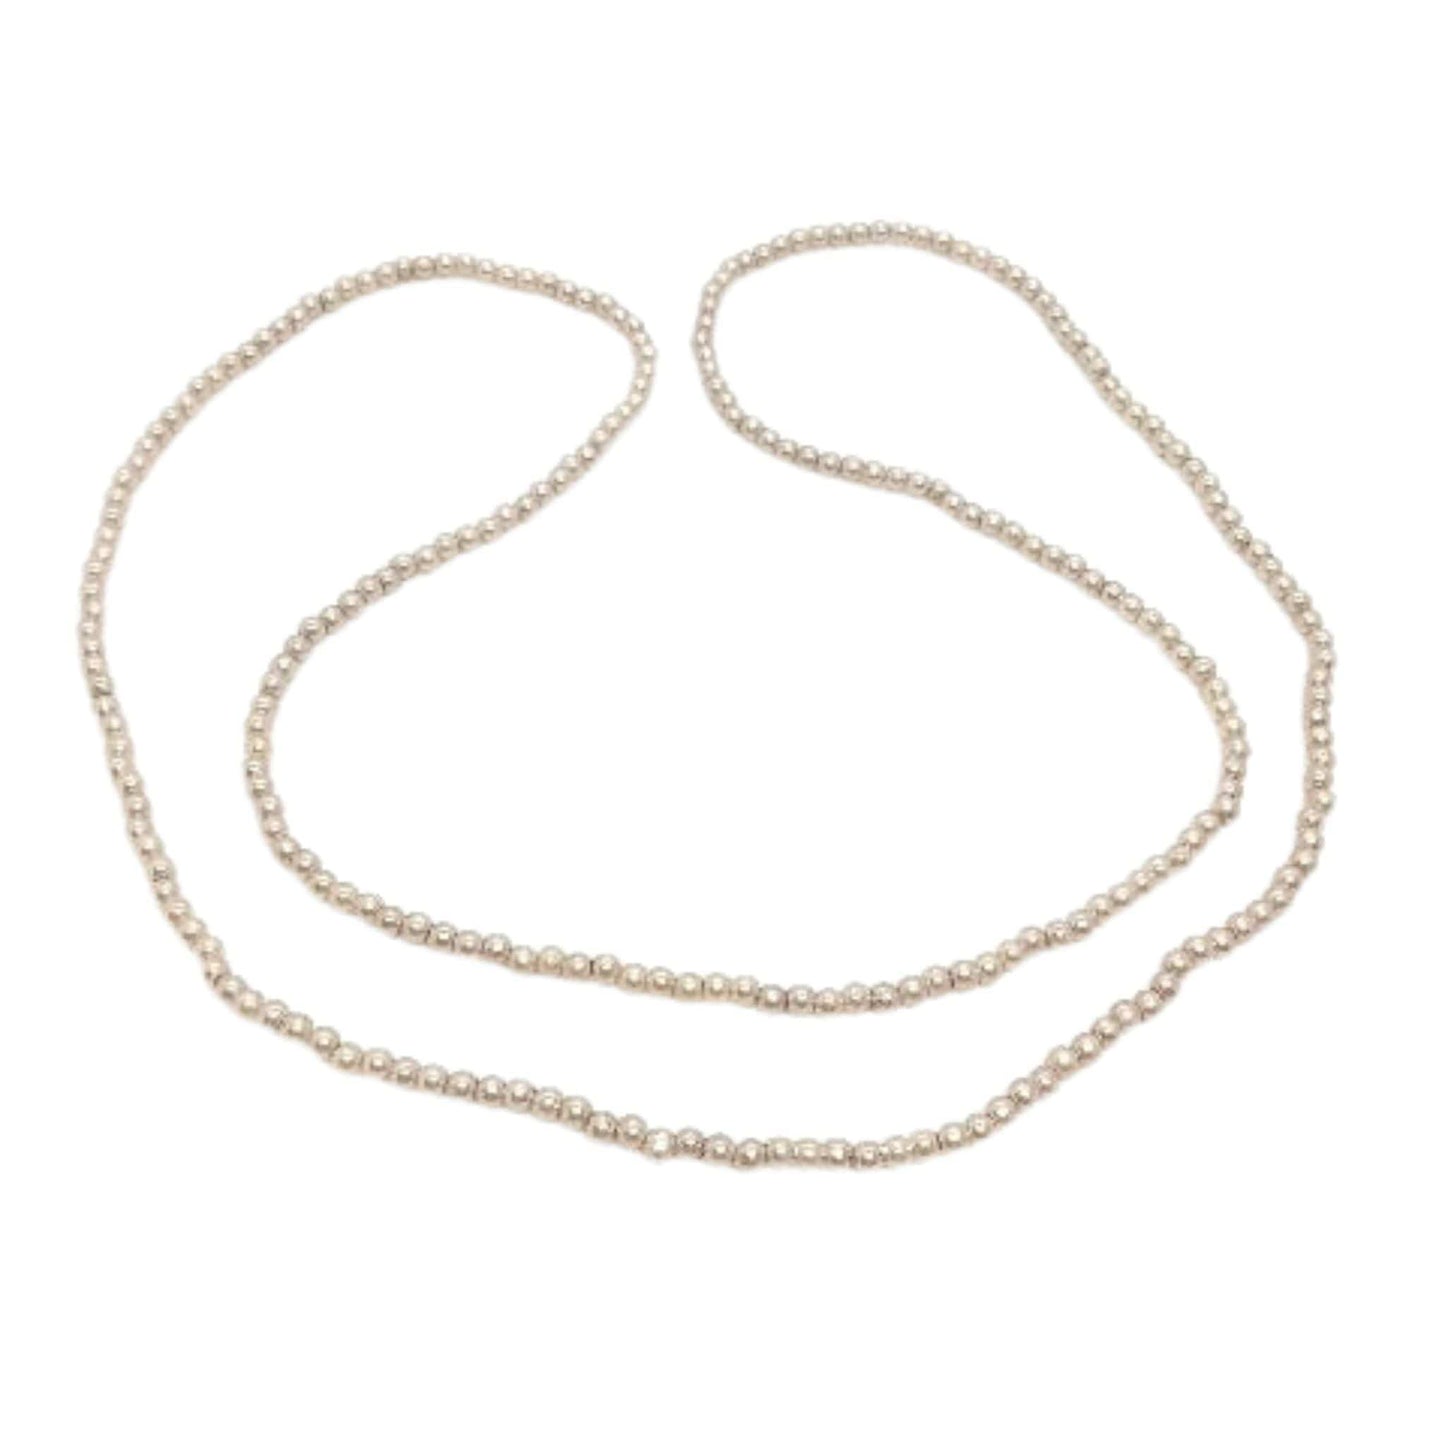 Vintage Seed Pearl Necklace Beige / Seed Pearls / Vintage 1980s